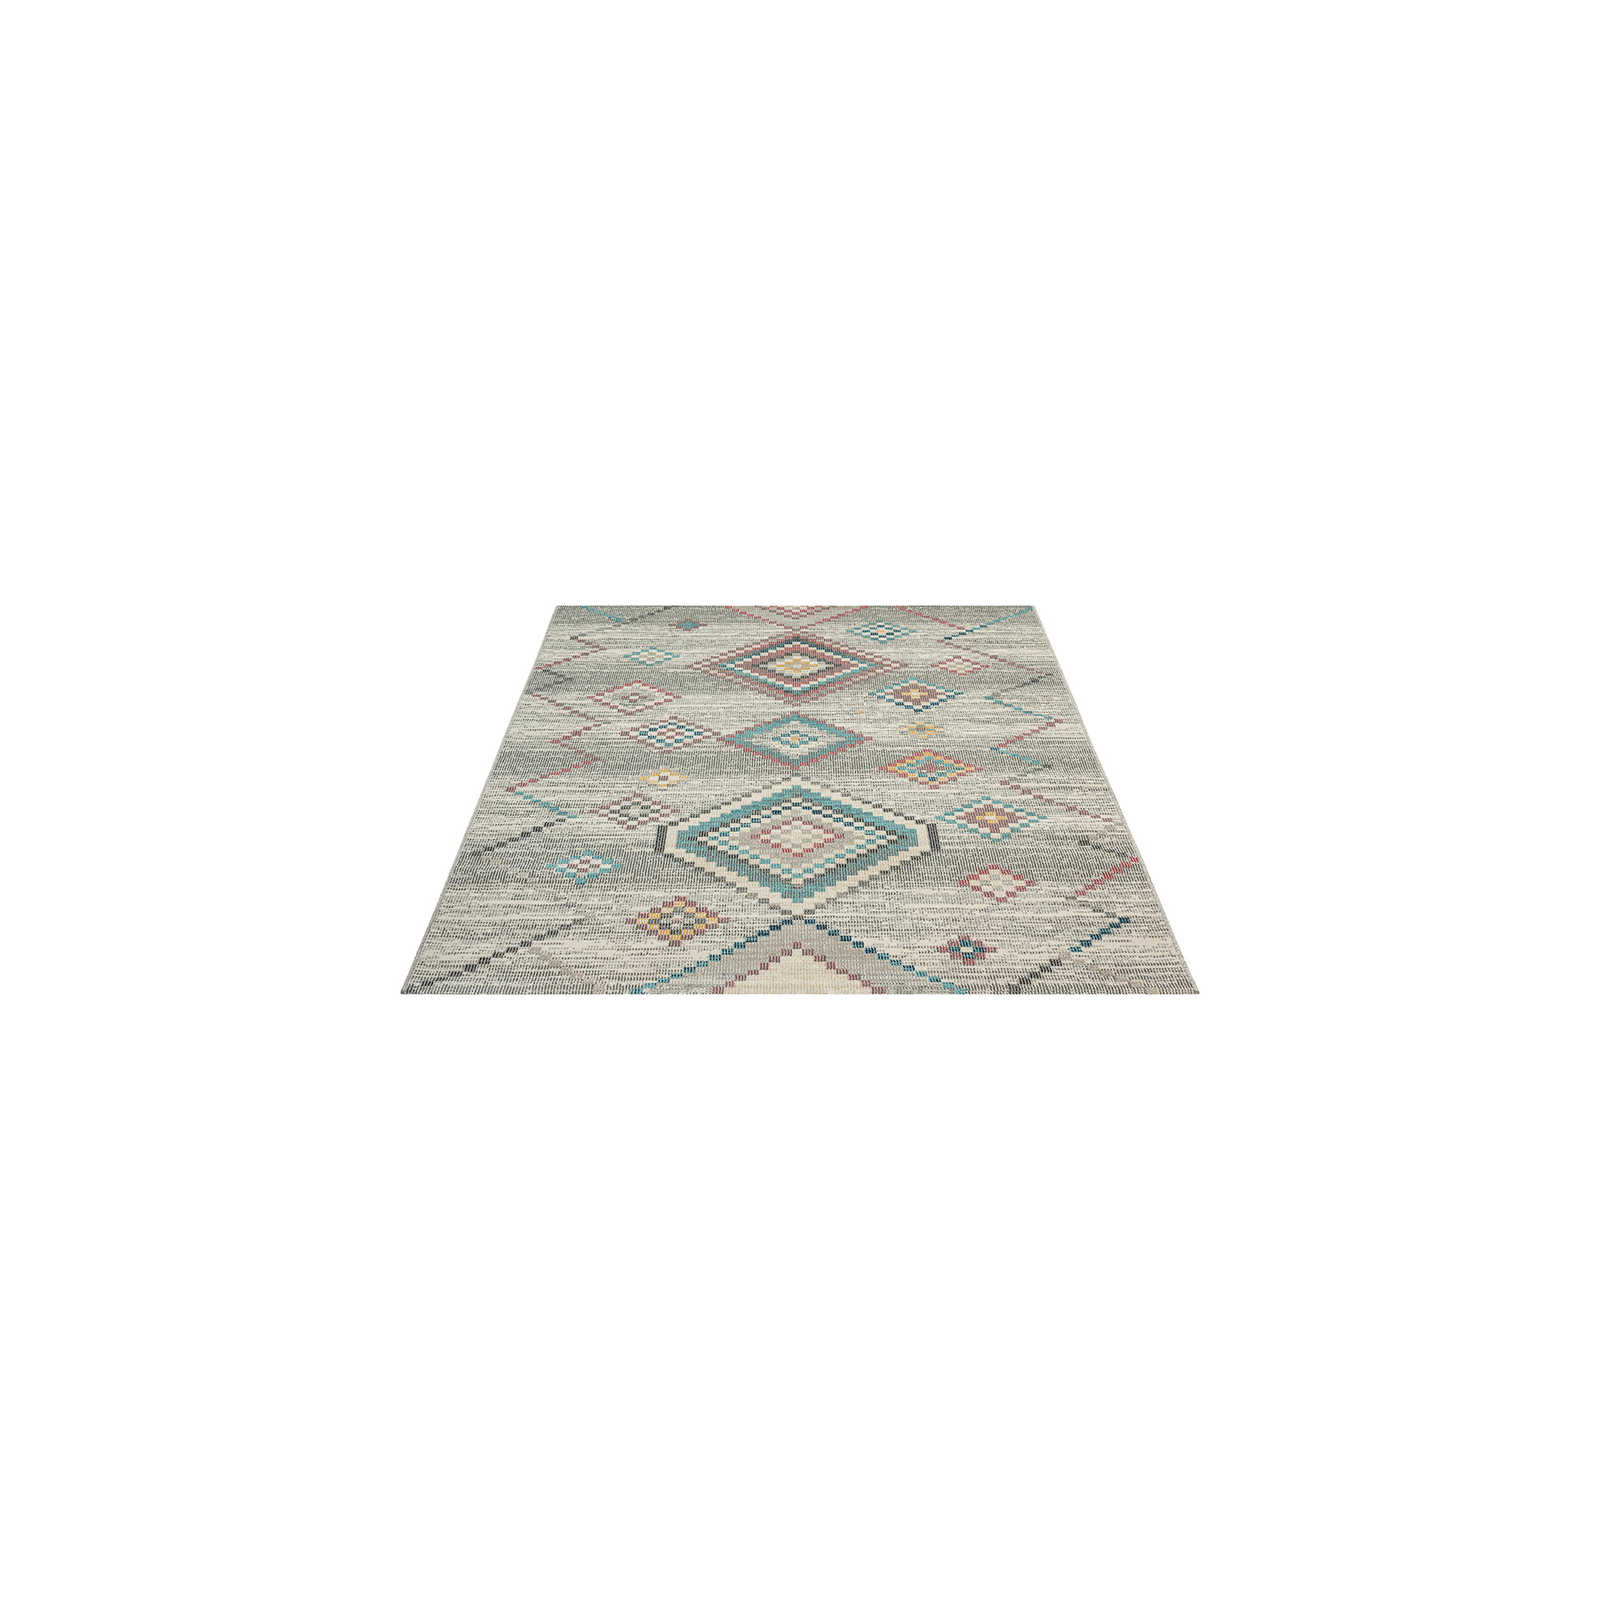 Cremefarbener Outdoor Teppich aus Flachgewebe – 170 x 120 cm
